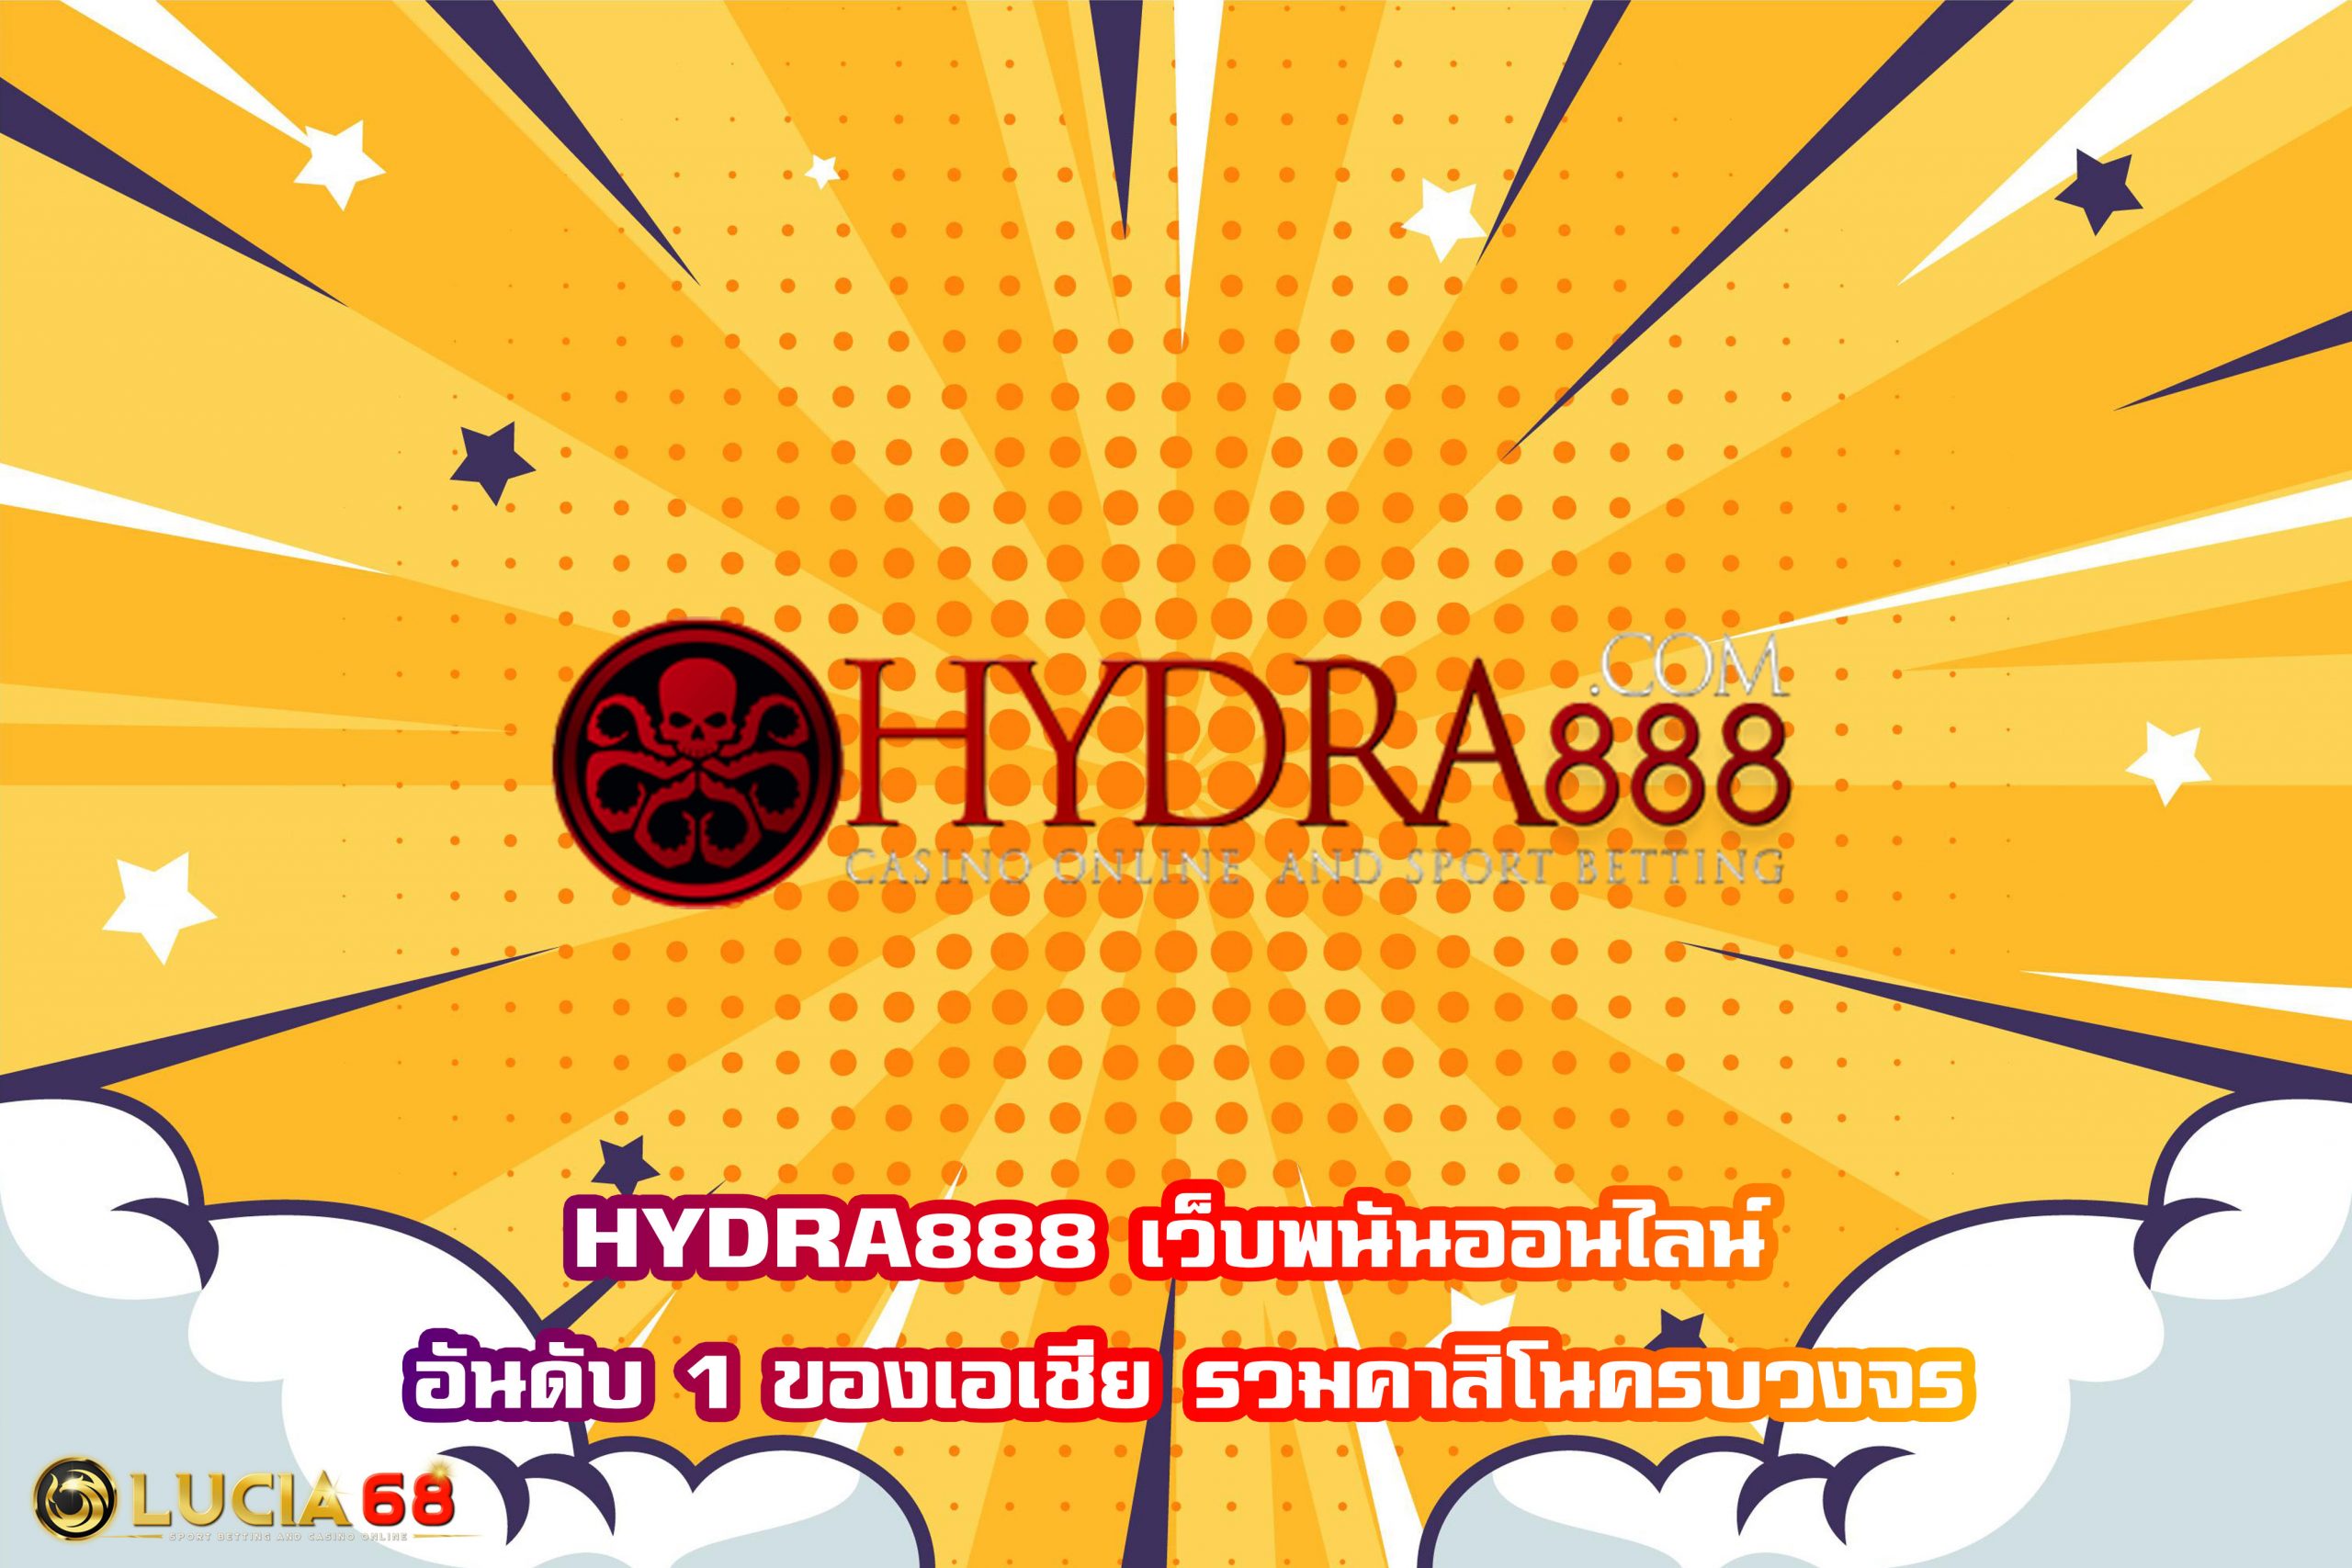 HYDRA888 เว็บพนันออนไลน์ อันดับ 1 ของเอเชีย รวมคาสิโนครบวงจร